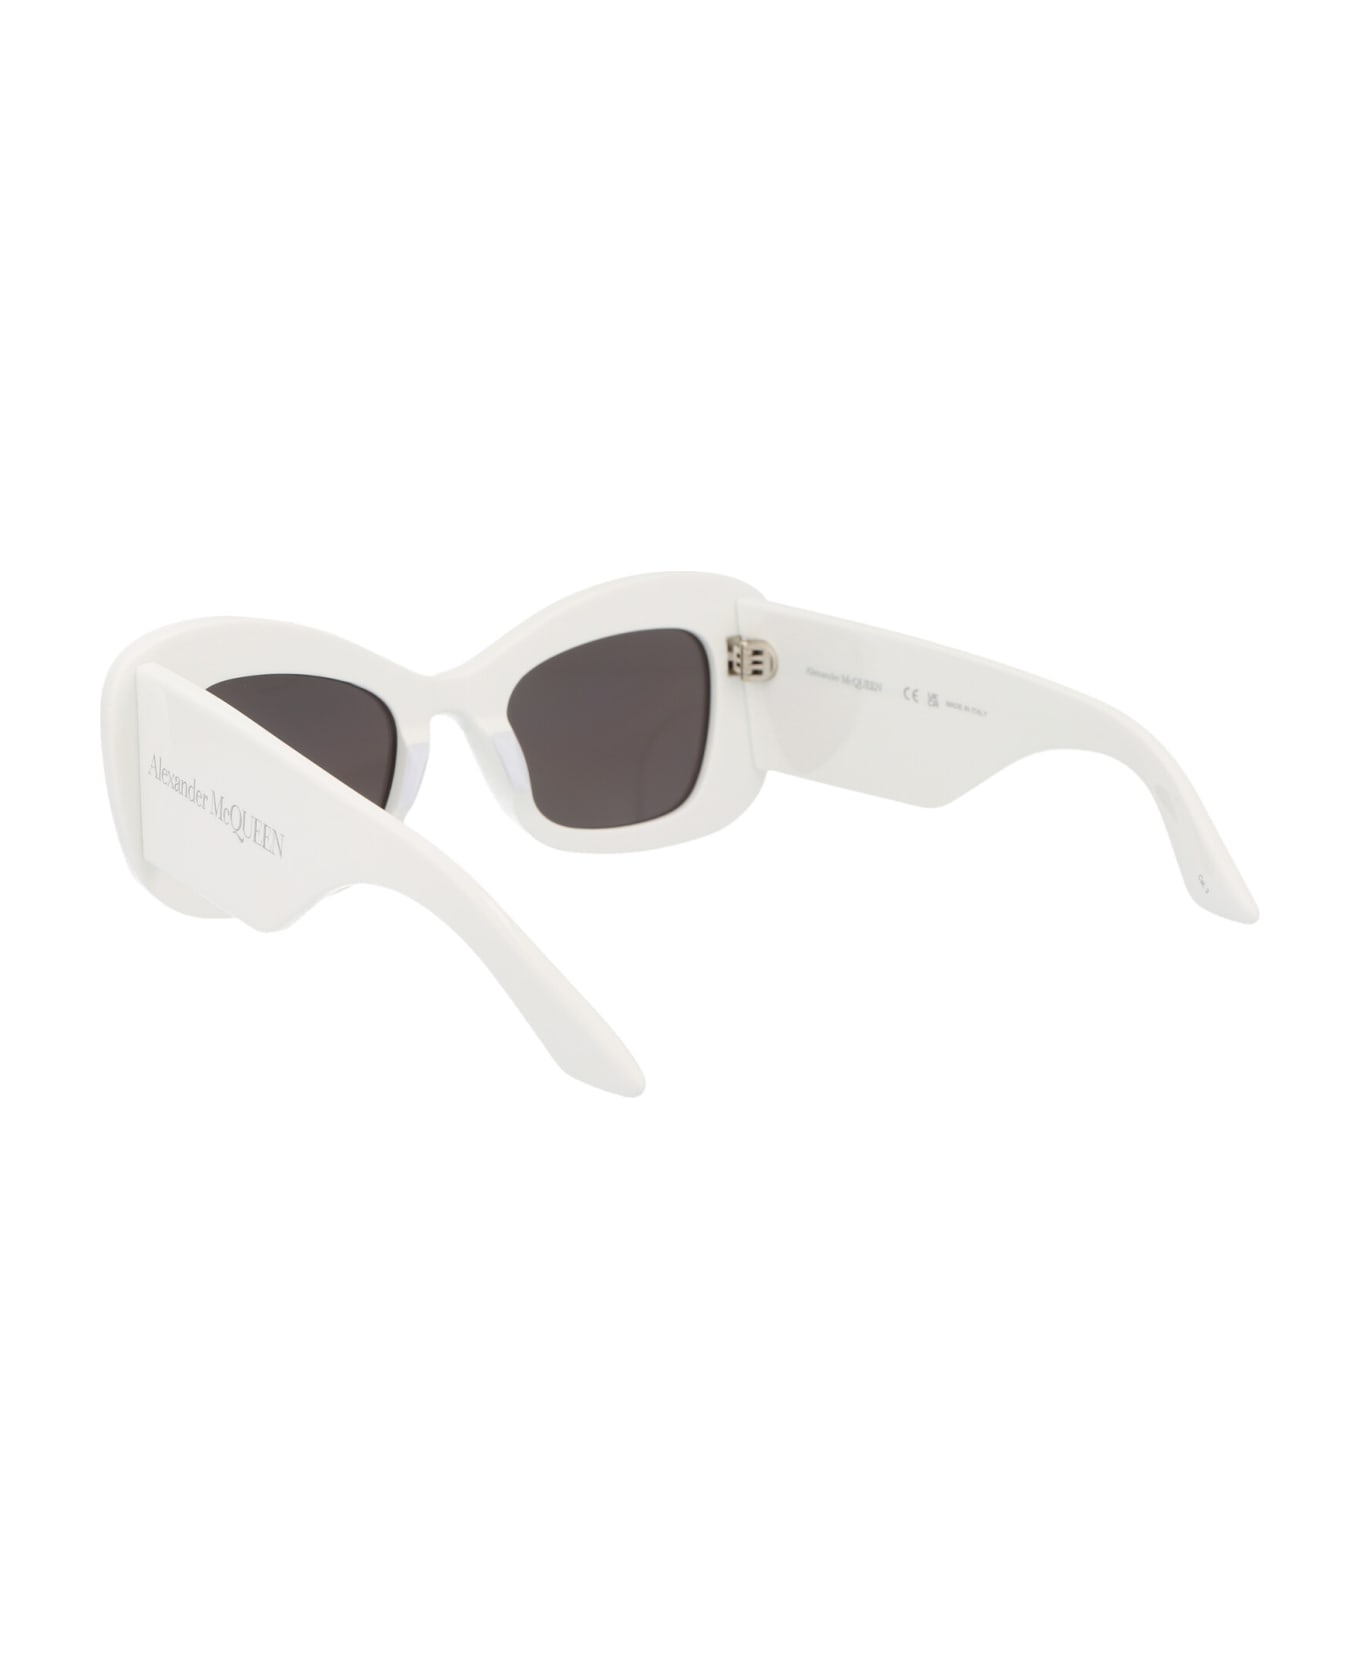 Alexander McQueen Eyewear Am0434s Sunglasses - 005 WHITE WHITE GREY